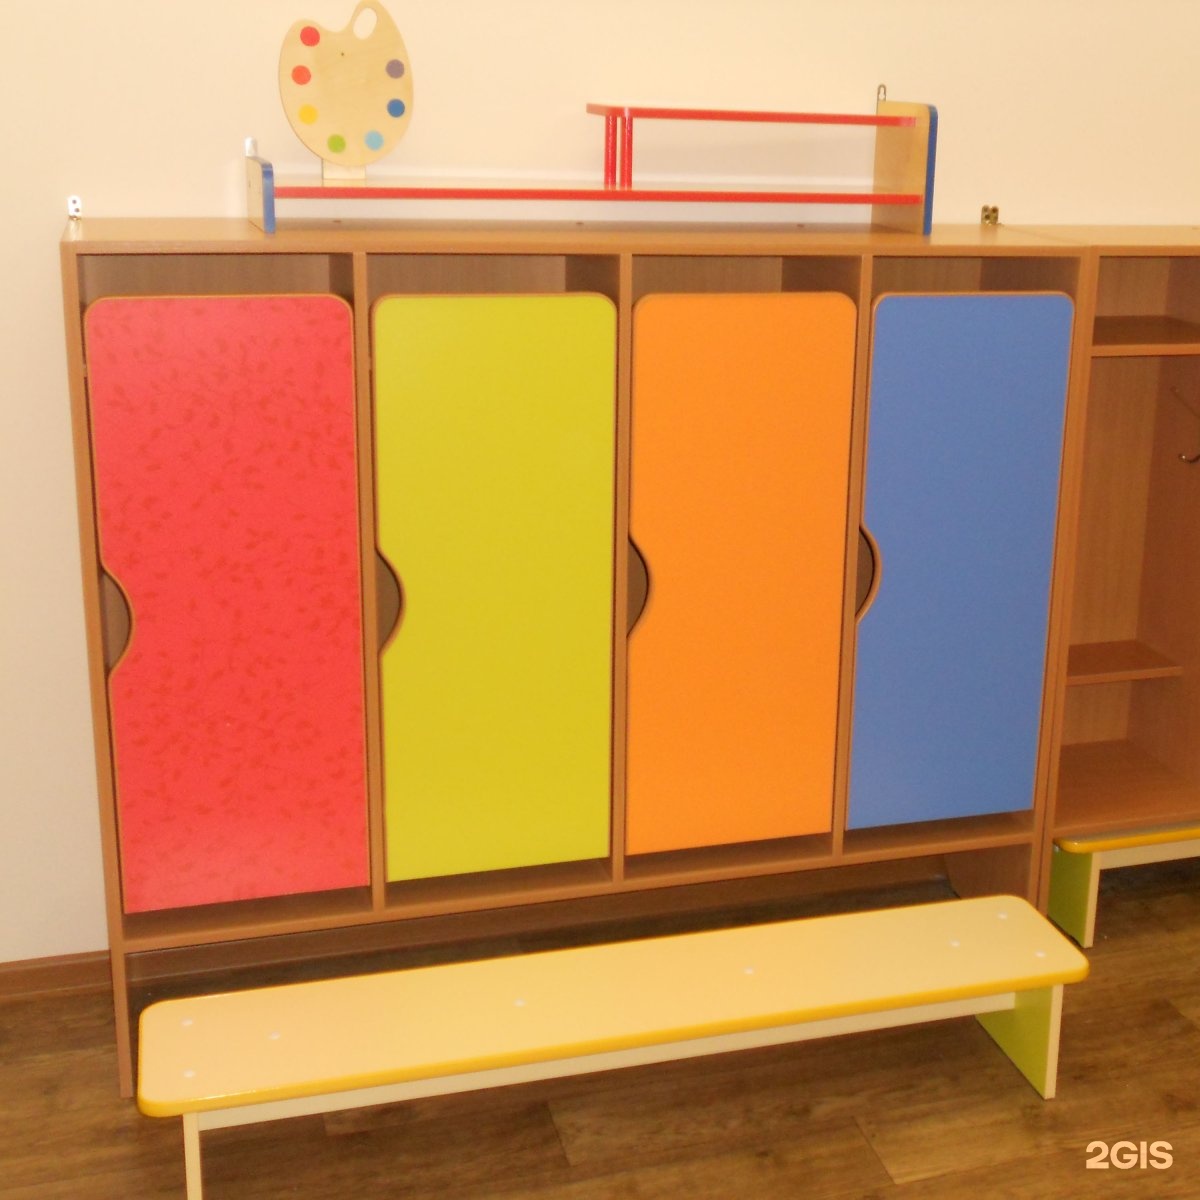 шкаф для полотенец в детский сад 5 секций